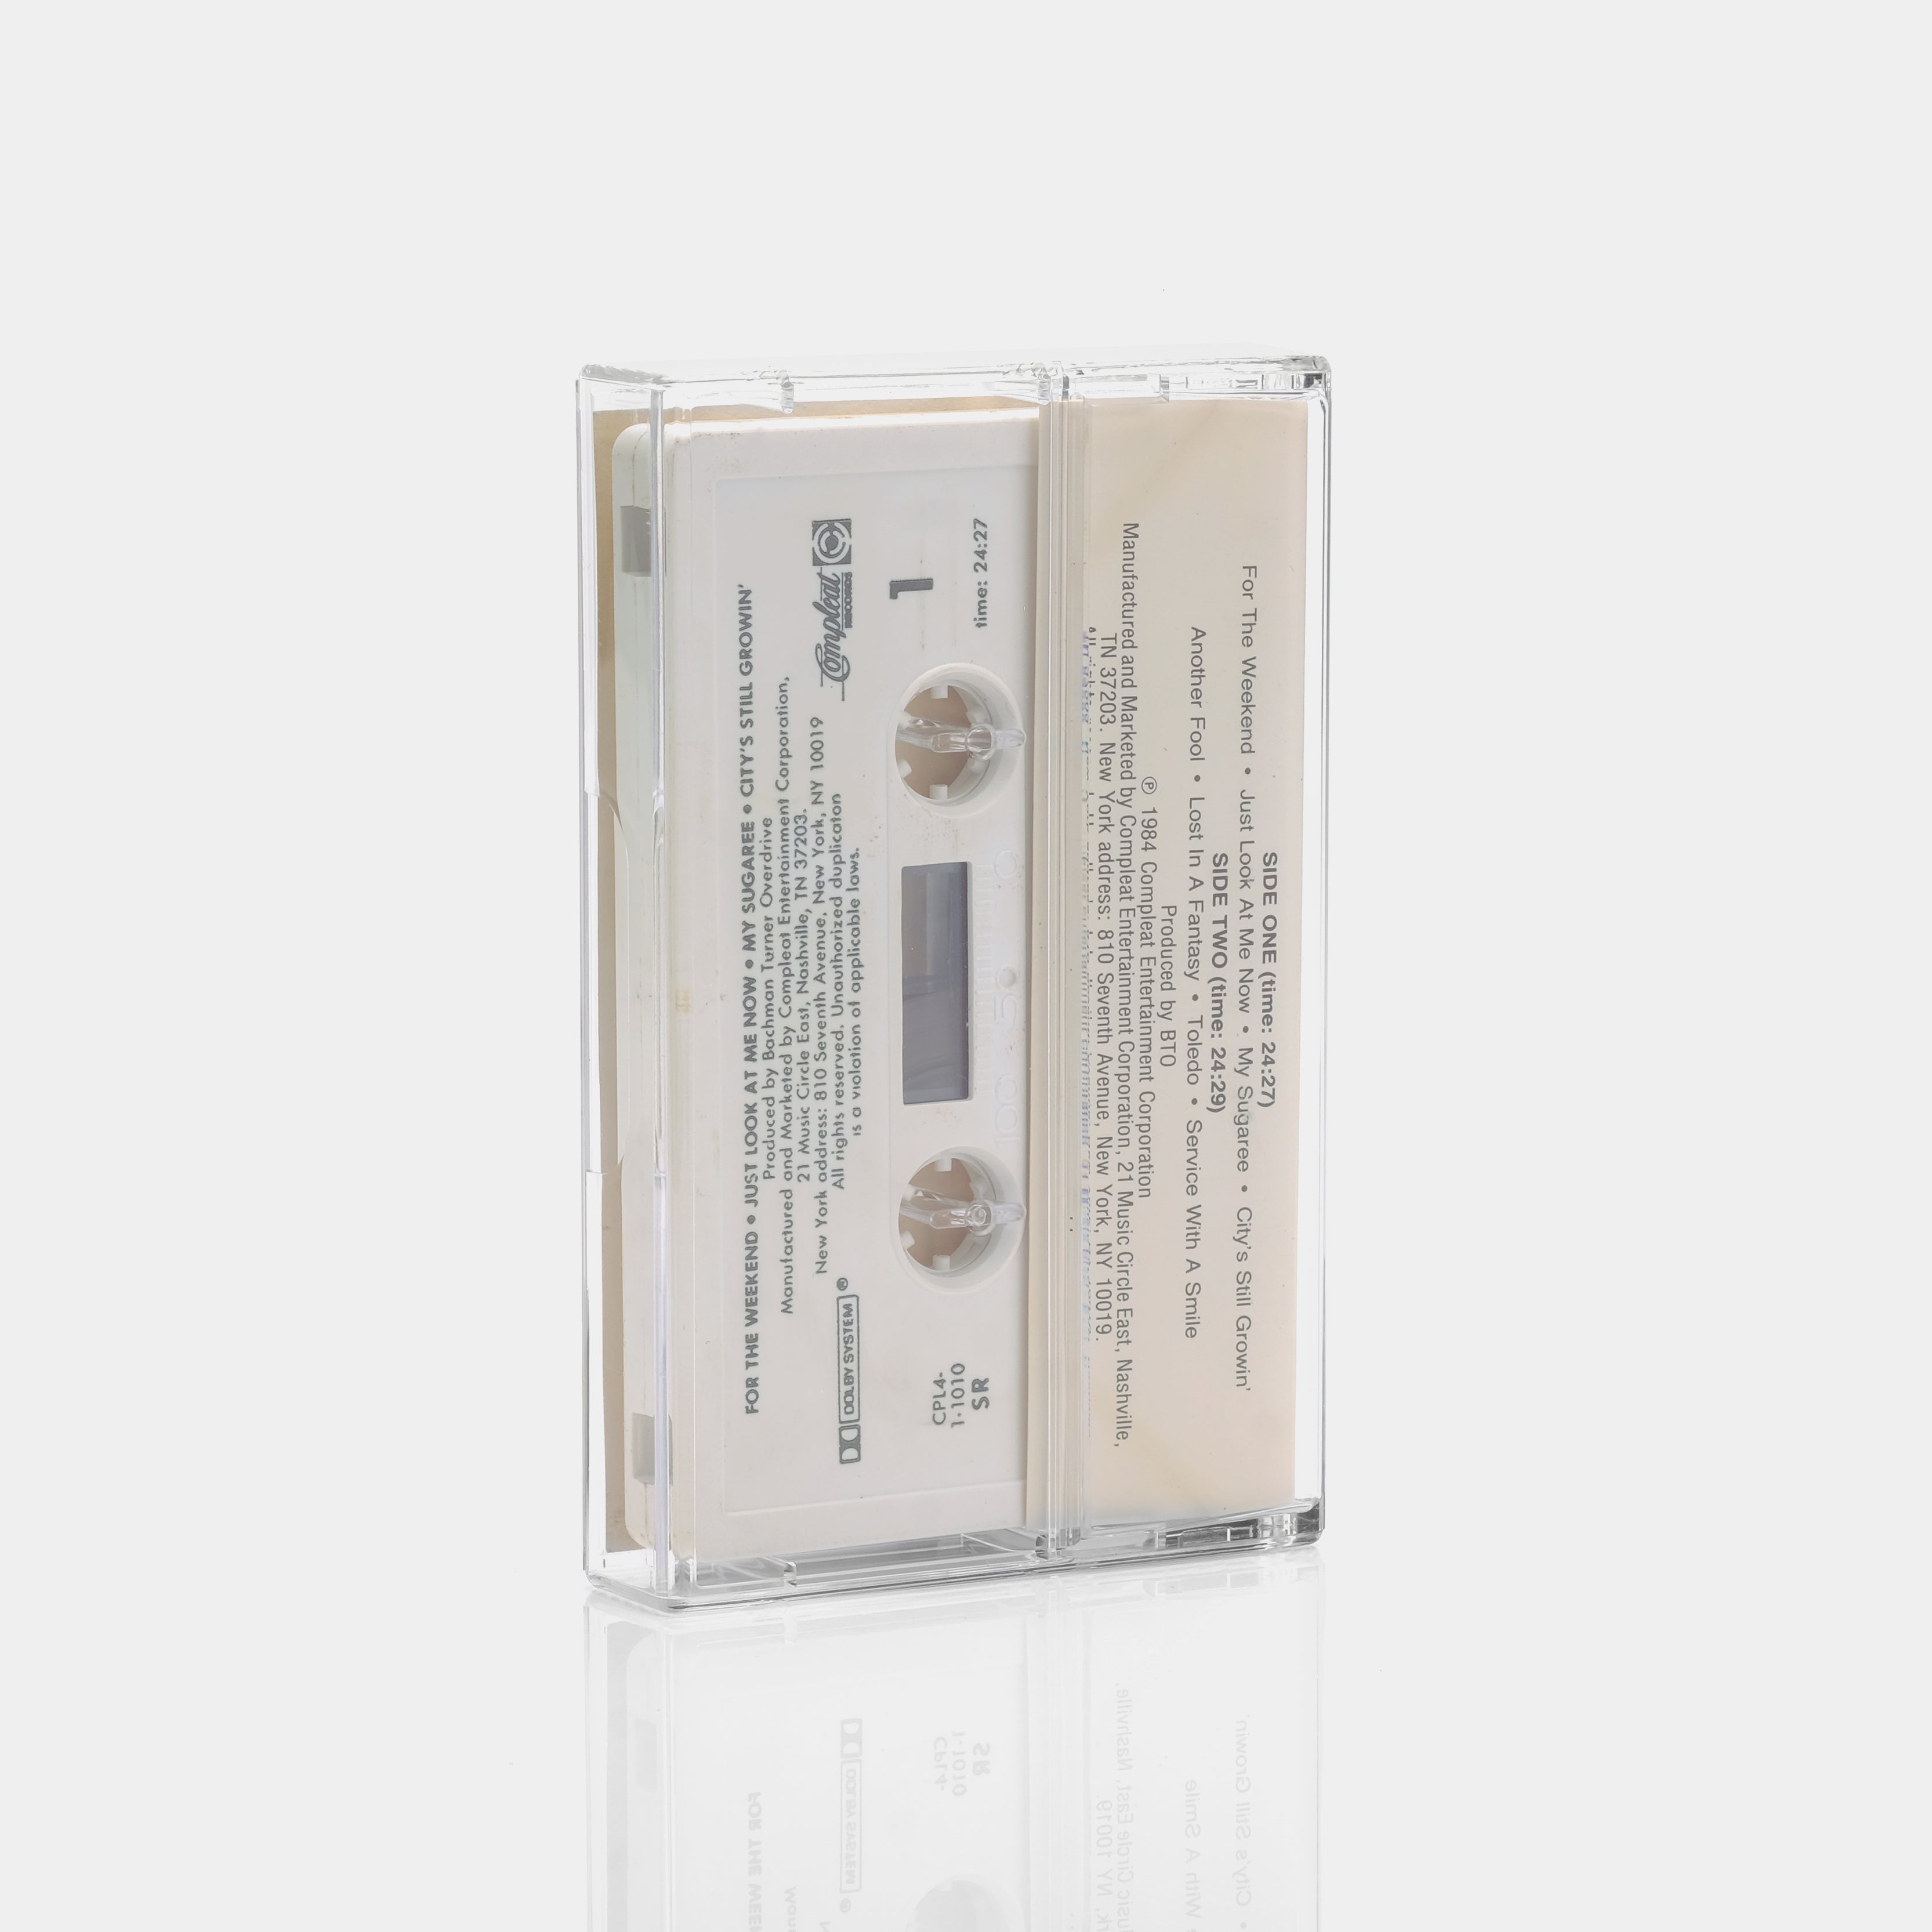 BTO - Bachman Turner Overdrive Cassette Tape